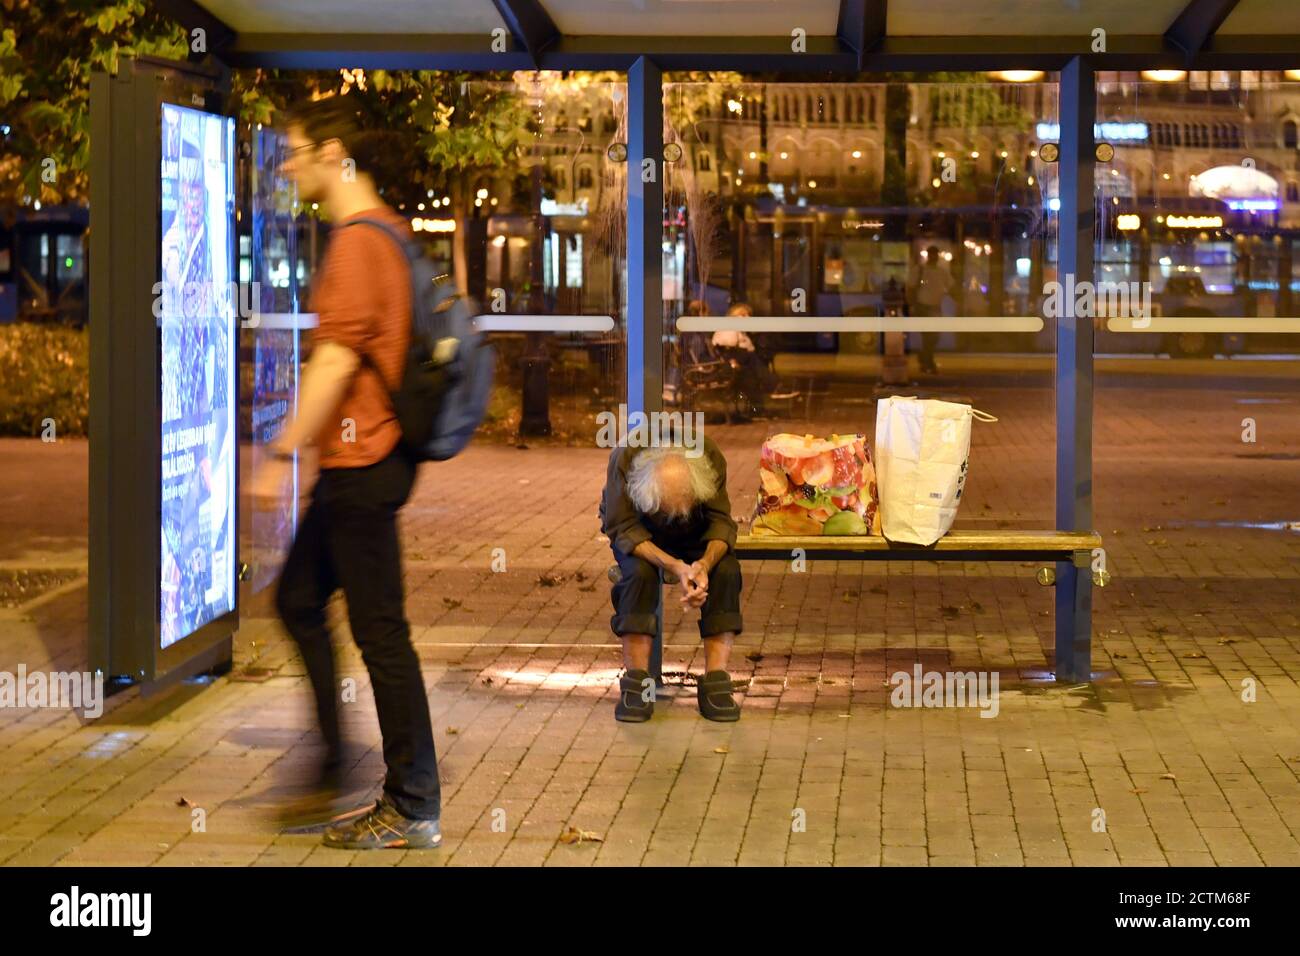 Budapest, Ungarn. 23 Settembre 2020. Un uomo senza casa si siede piegato in avanti ad una fermata dell'autobus - accanto a lui sono due borse di plastica - un passerby, un giovane uomo cammina oltre. Dopo, il 09/23/2020. | utilizzo in tutto il mondo credito: dpa/Alamy Live News Foto Stock